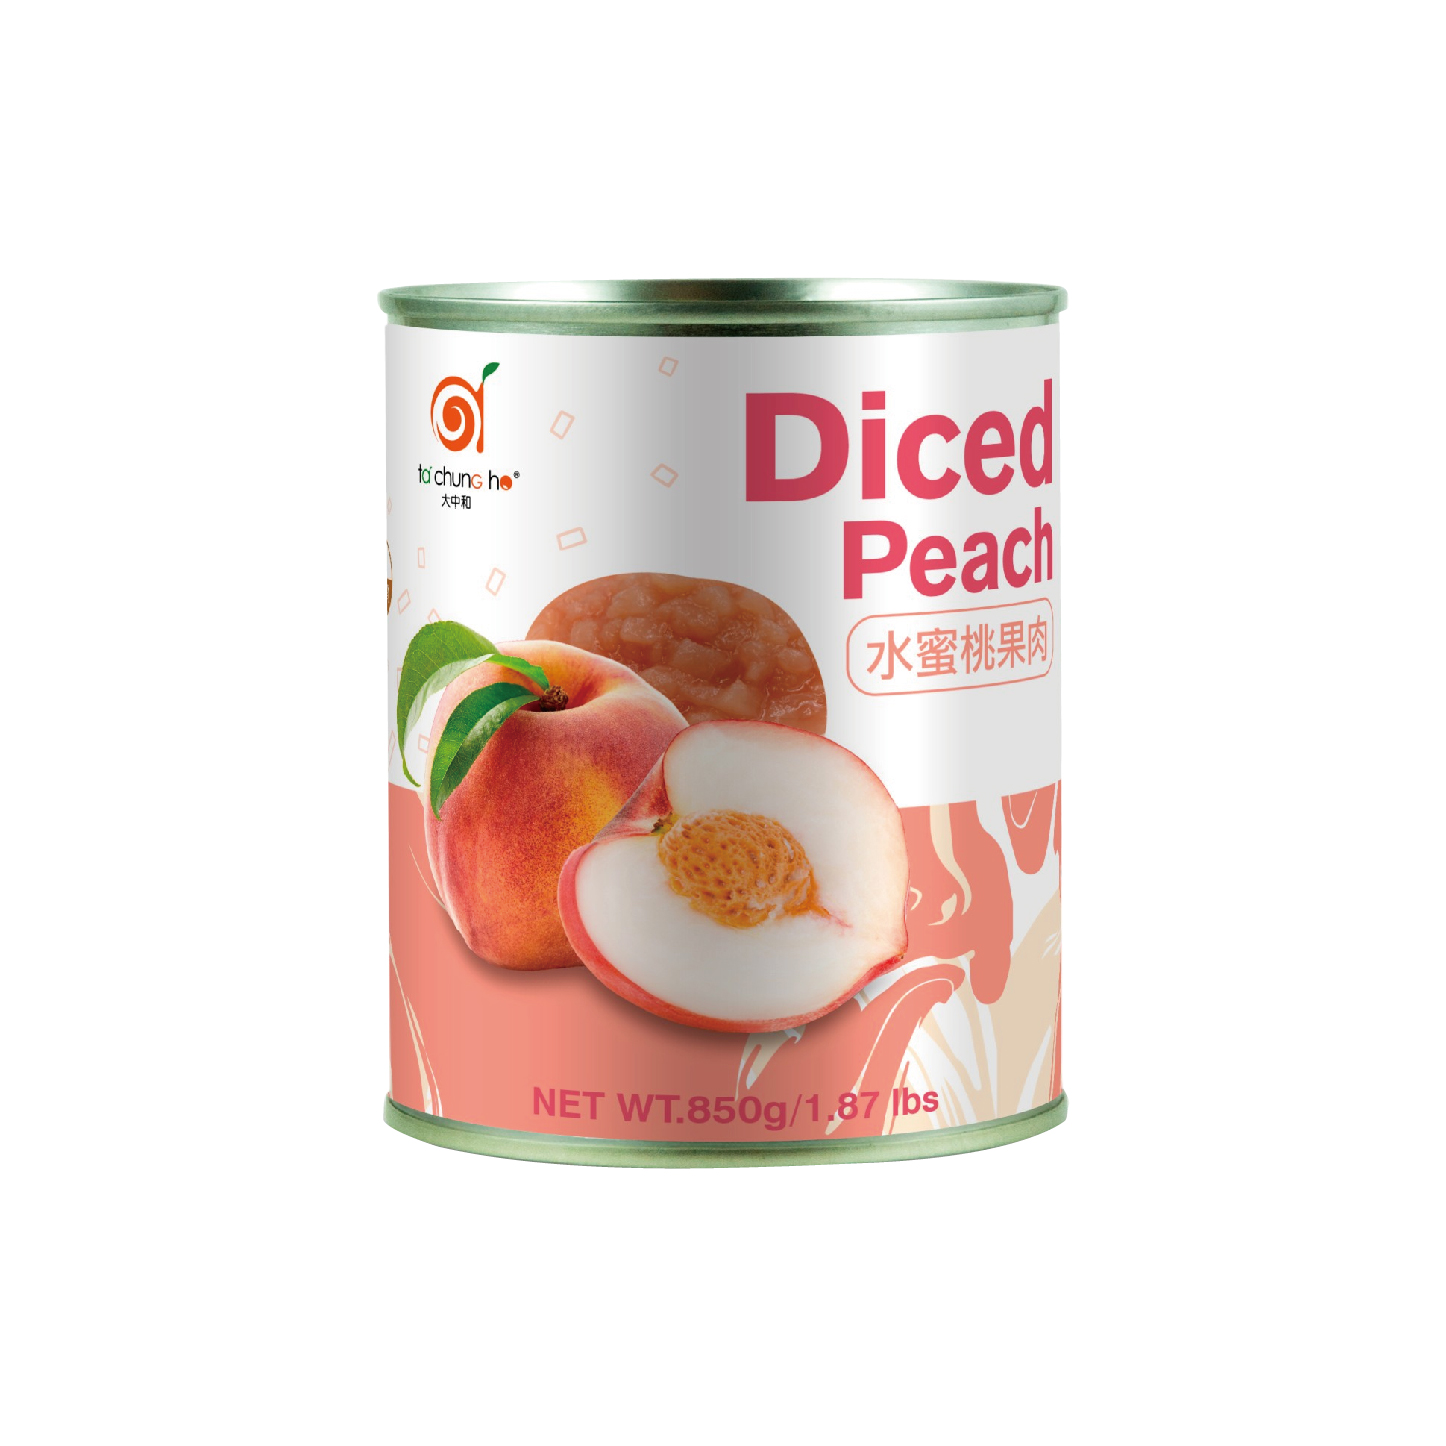 Diced Peach Package